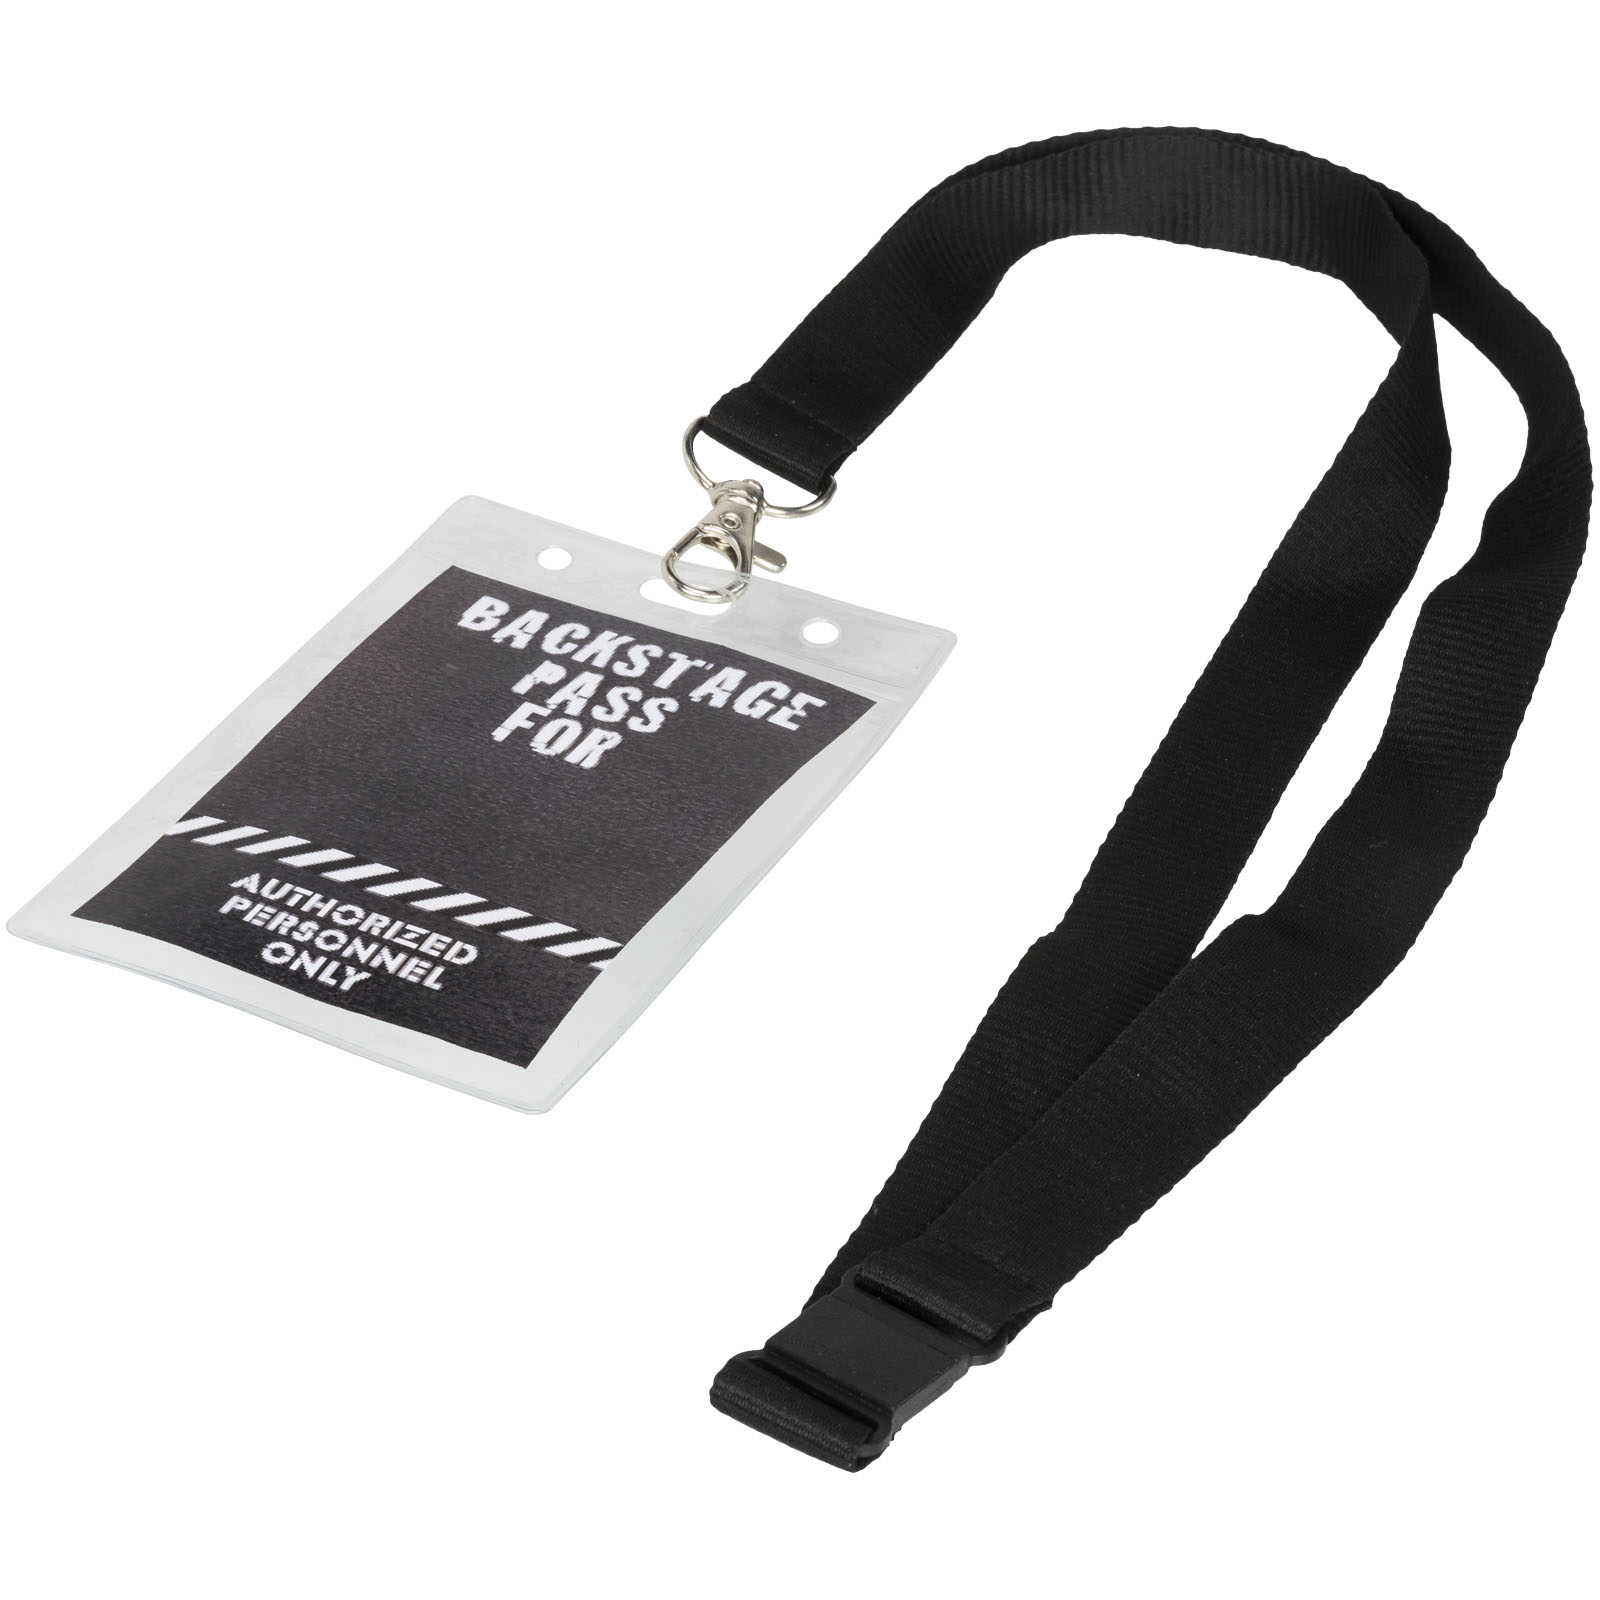 Porte-badges publicitaires - Porte-badge Lorenzo - 3